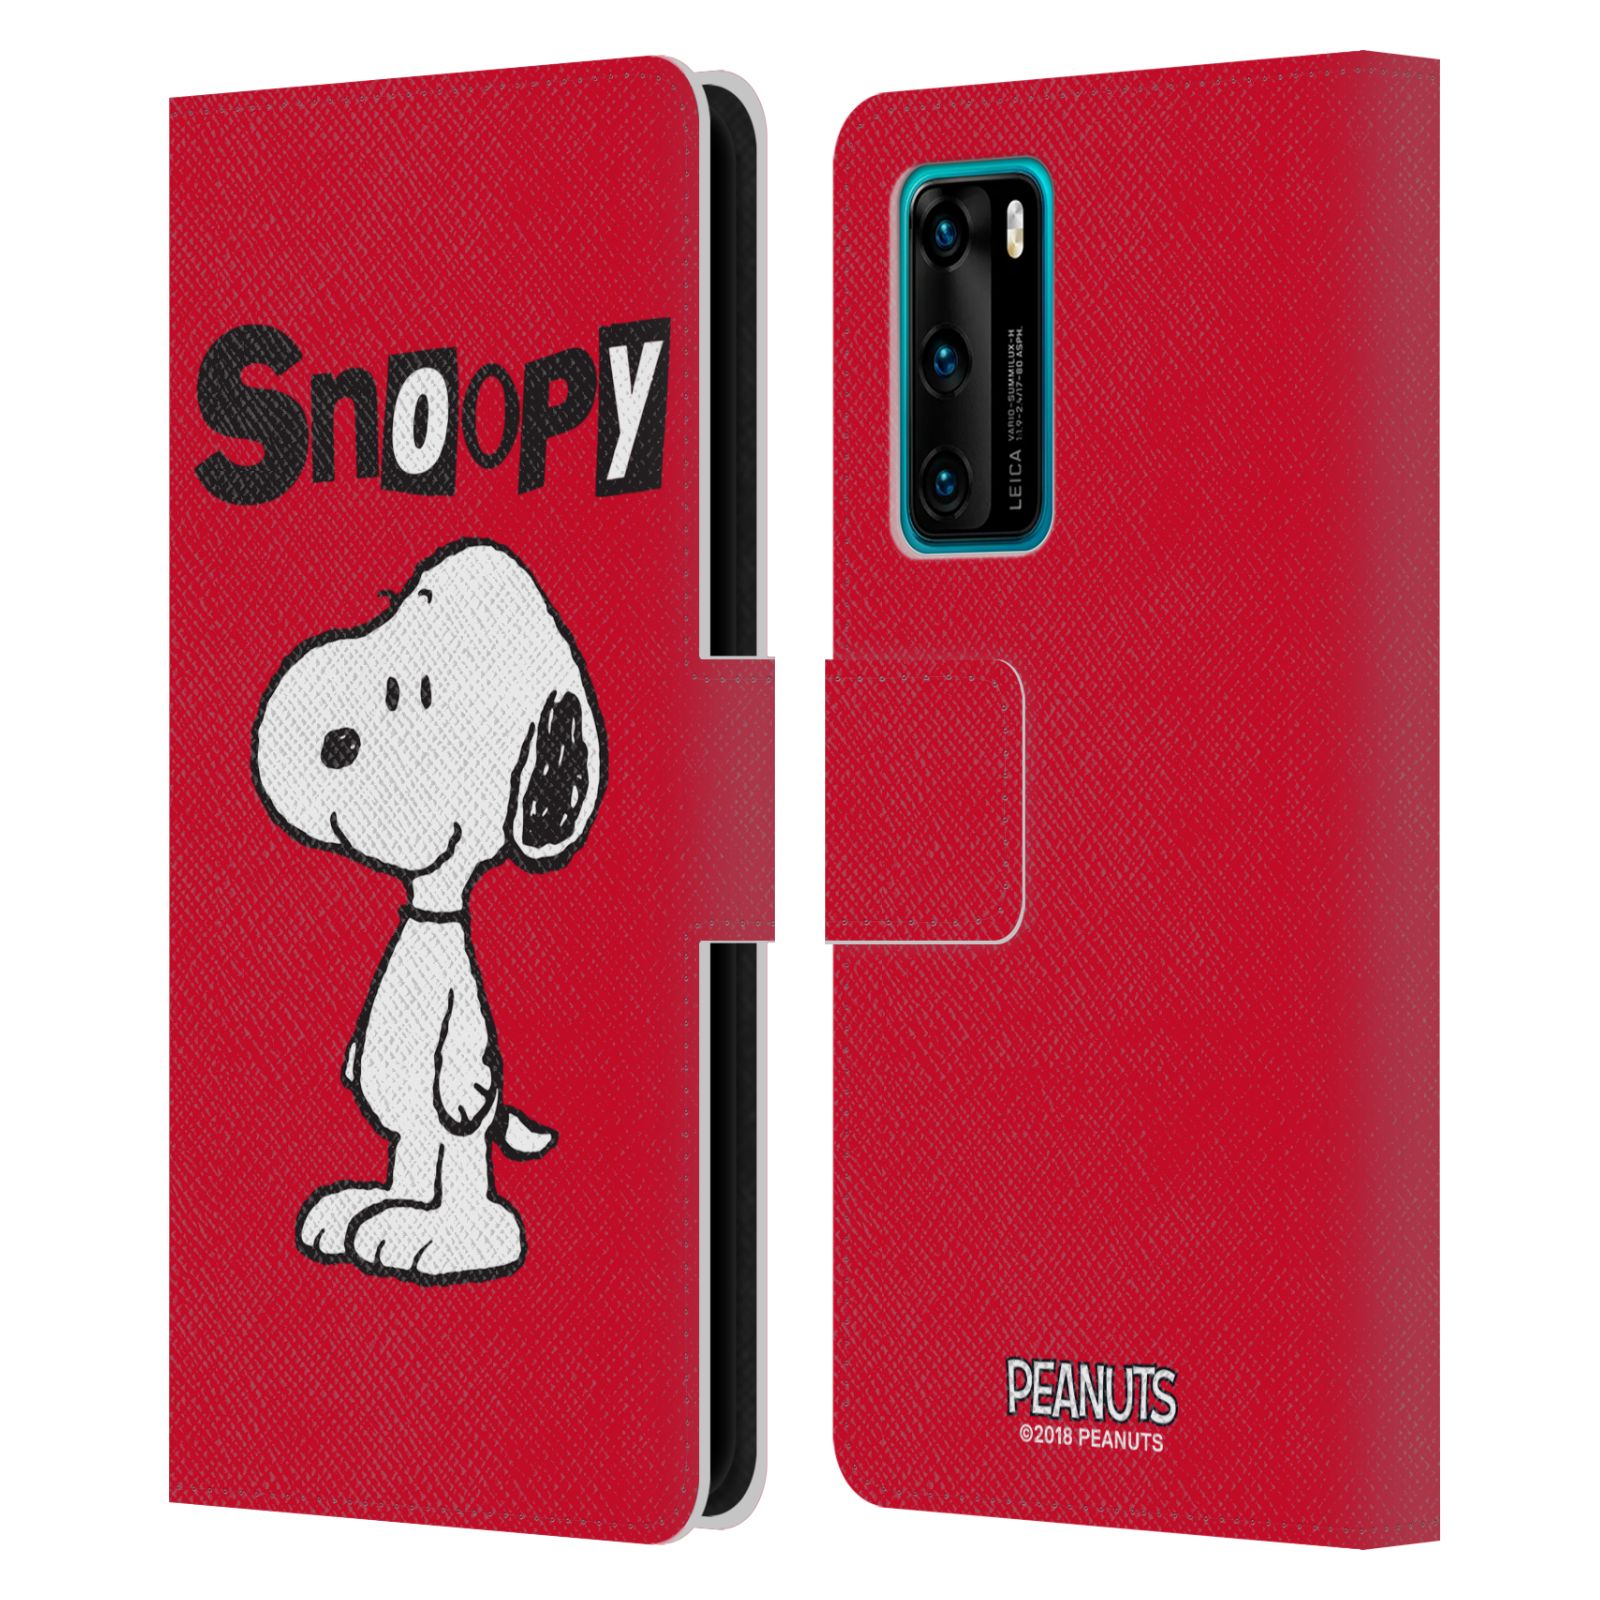 Pouzdro na mobil Huawei P40 - HEAD CASE - Peanuts - Snoopy červená